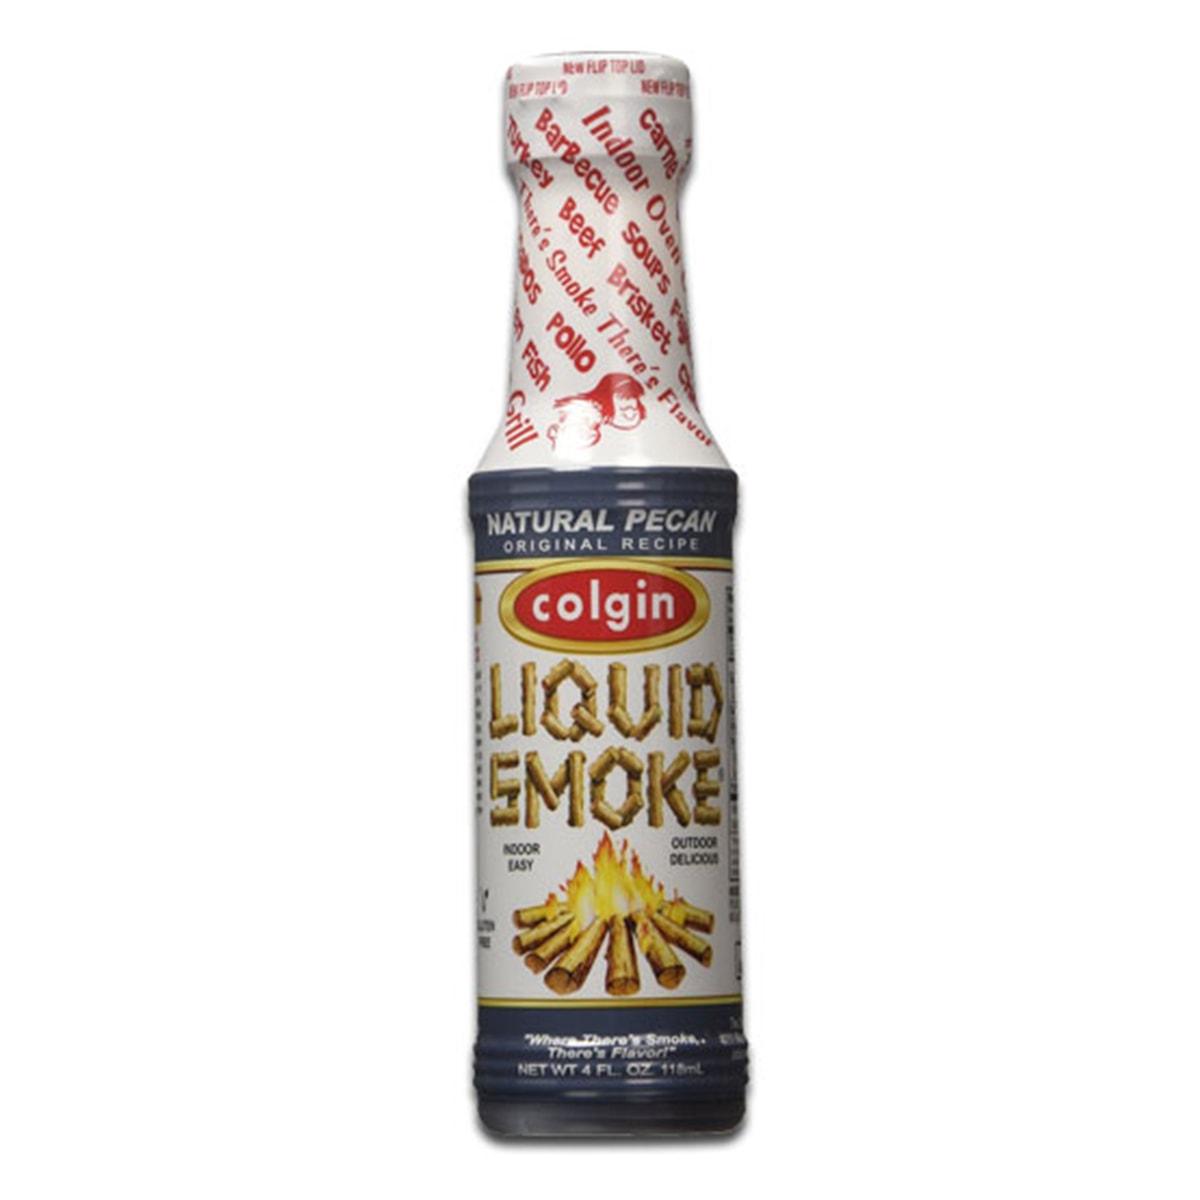 Buy Colgin Natural Pecan Liquid Smoke - 118 ml